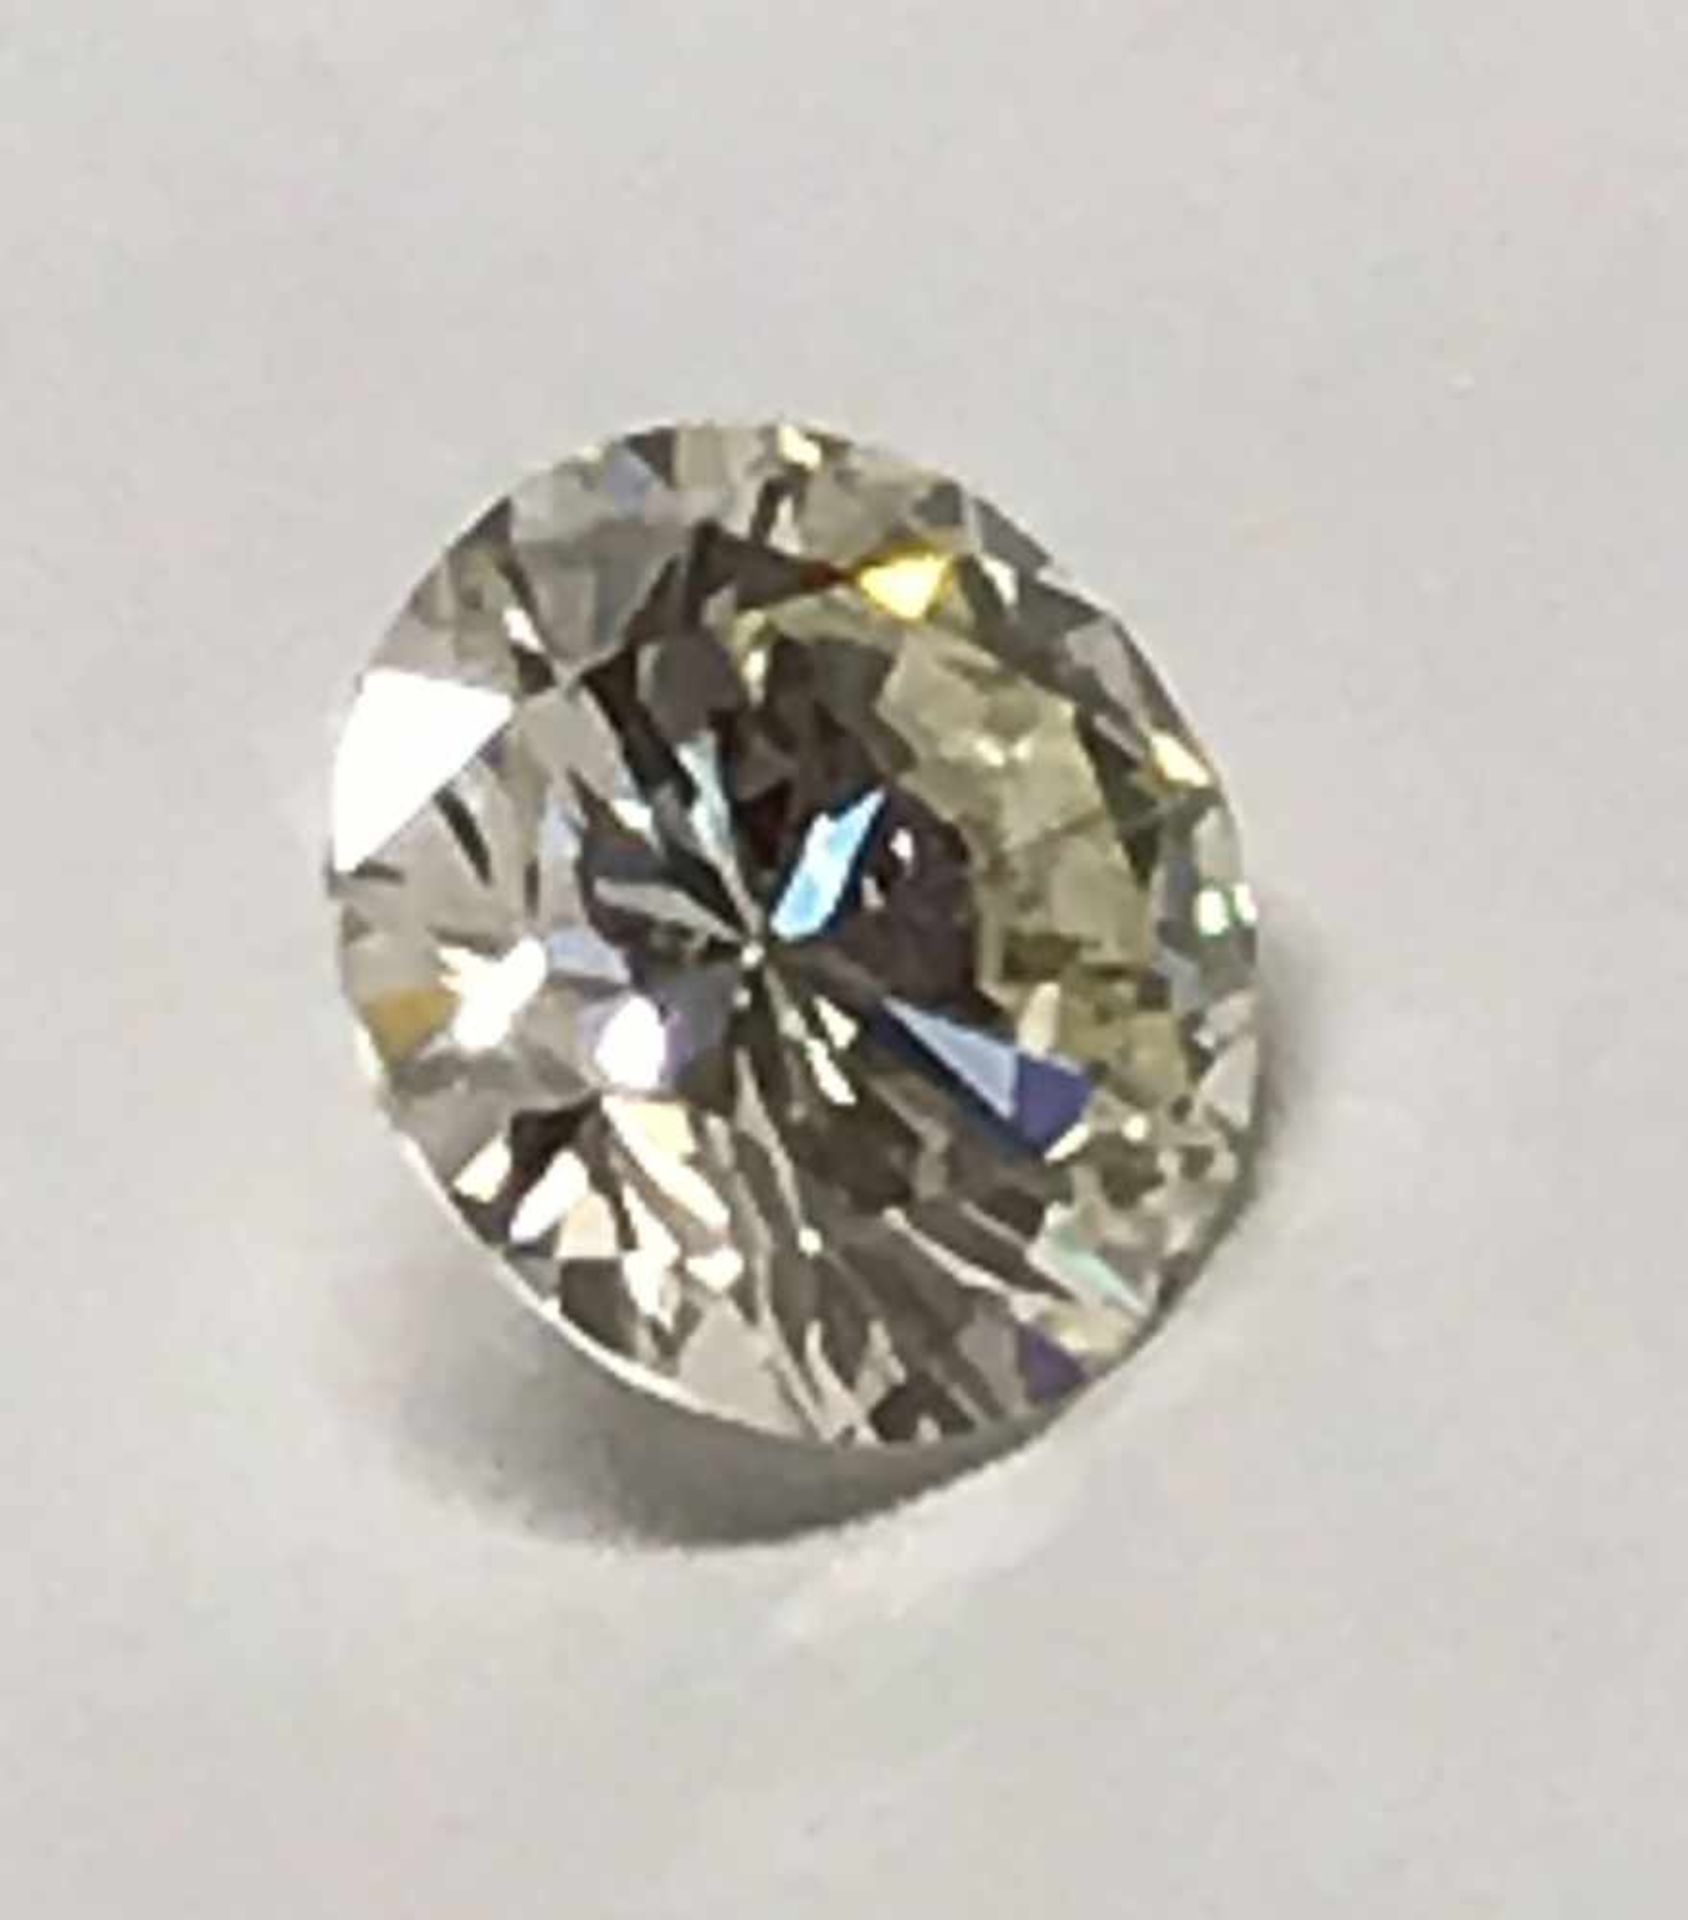 Diamant 3,65 ct, vvs2, getönt N-O, Proportionen sehr gut, Politur sehr gut, Symetrie gut, Zertifikat - Image 3 of 4